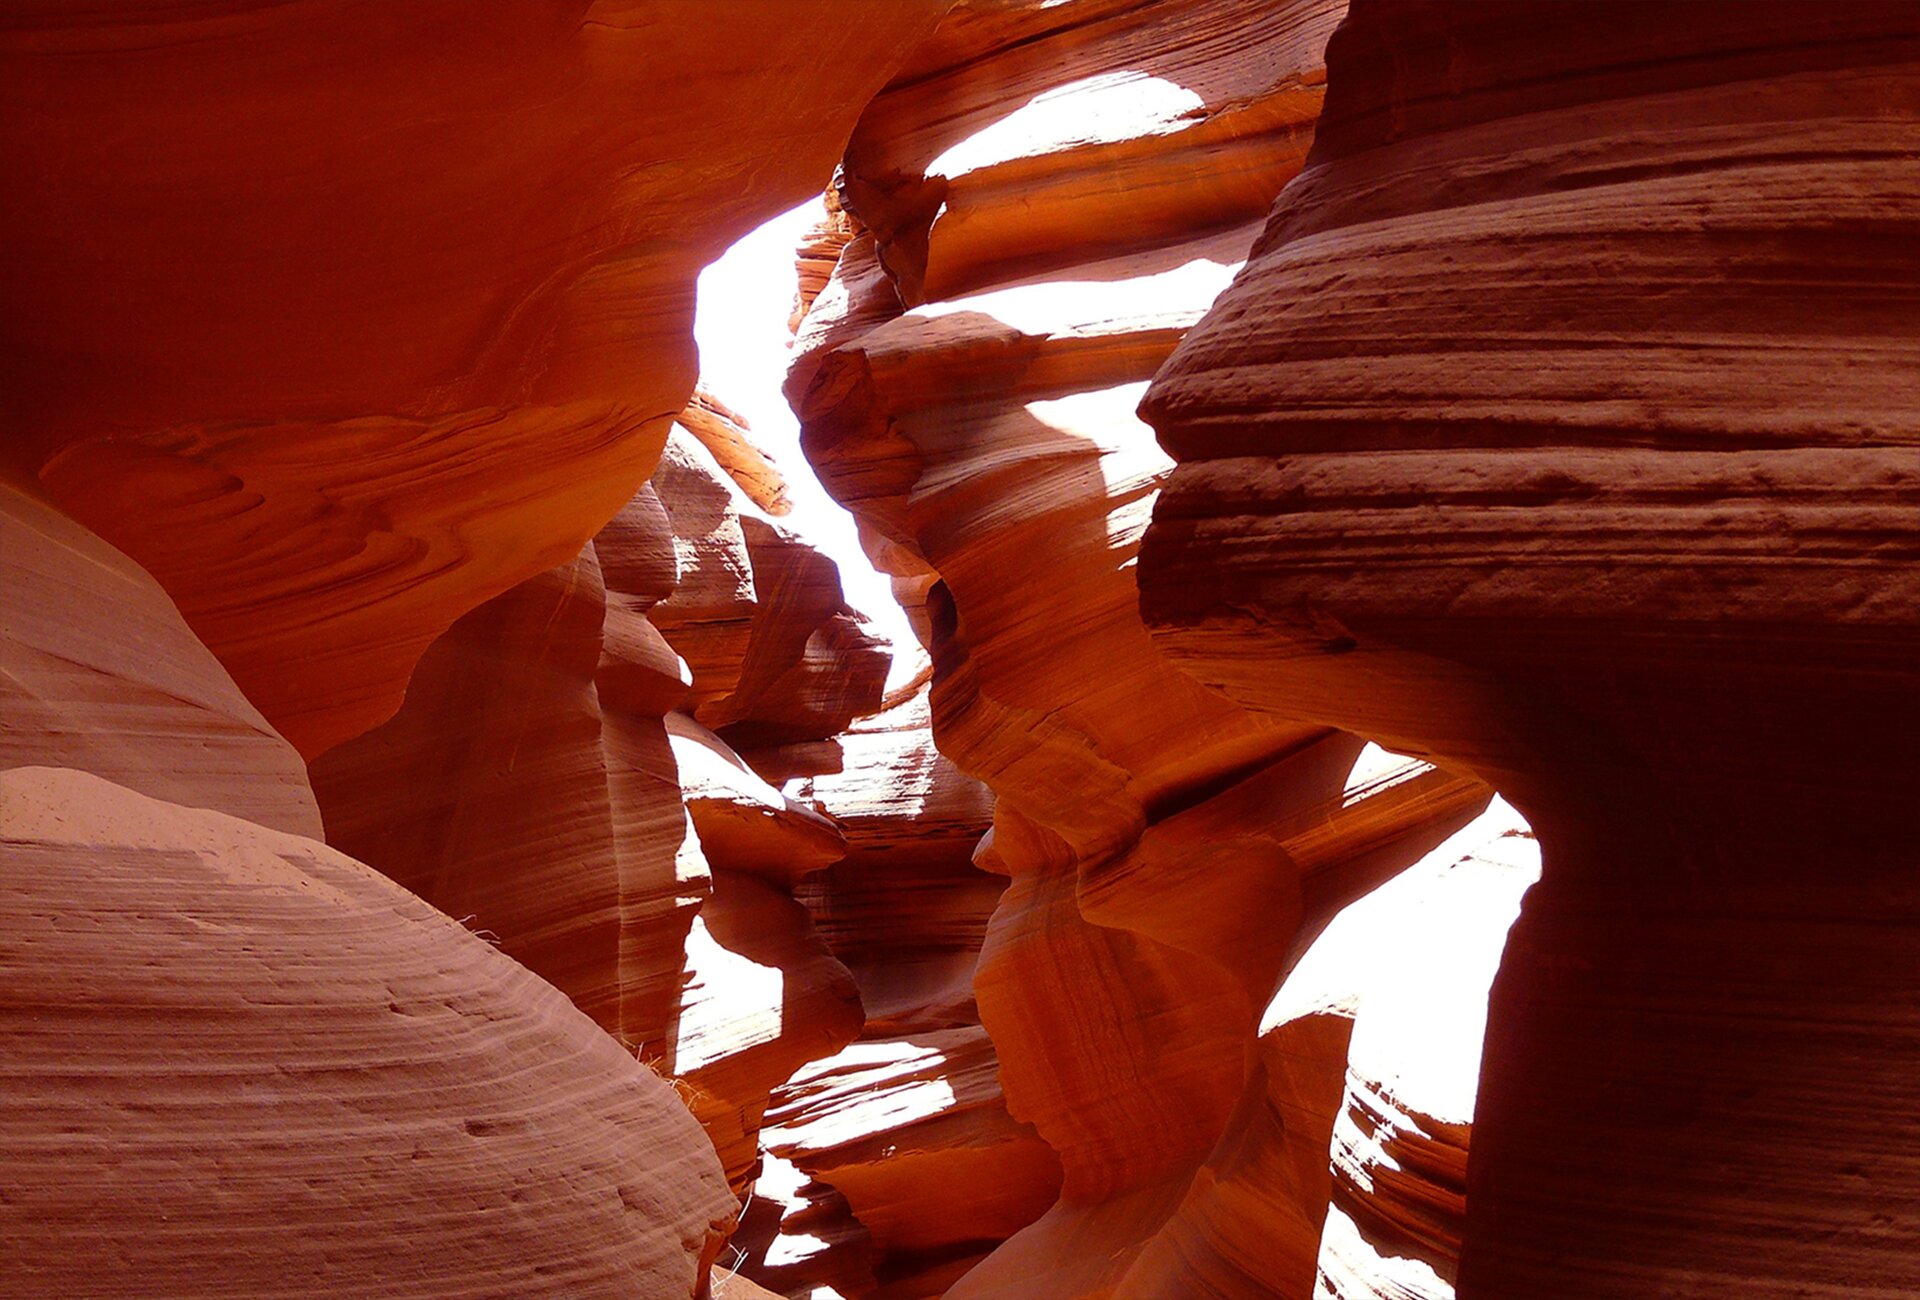 Kolorowe zdjęcie zostało wykonane wewnątrz kanionu. Widać czerwonawo-rdzawe skały o nietypowych, wygładzonych kształtach. Od góry wpadają promienie słoneczne rozświetlając wnętrze. 